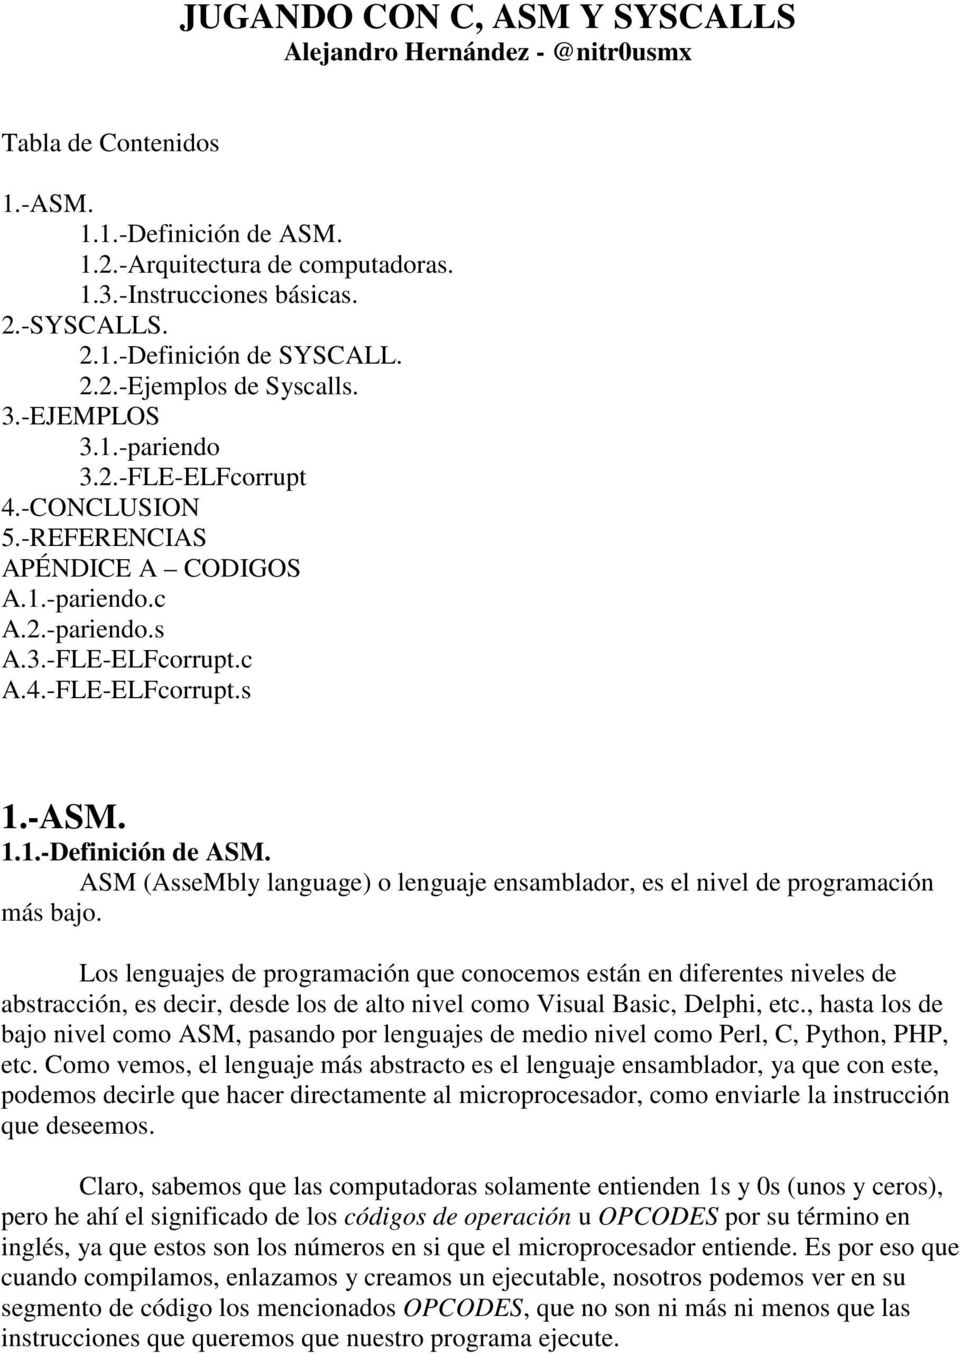 -ASM. 1.1.-Definición de ASM. ASM (AsseMbly language) o lenguaje ensamblador, es el nivel de programación más bajo.